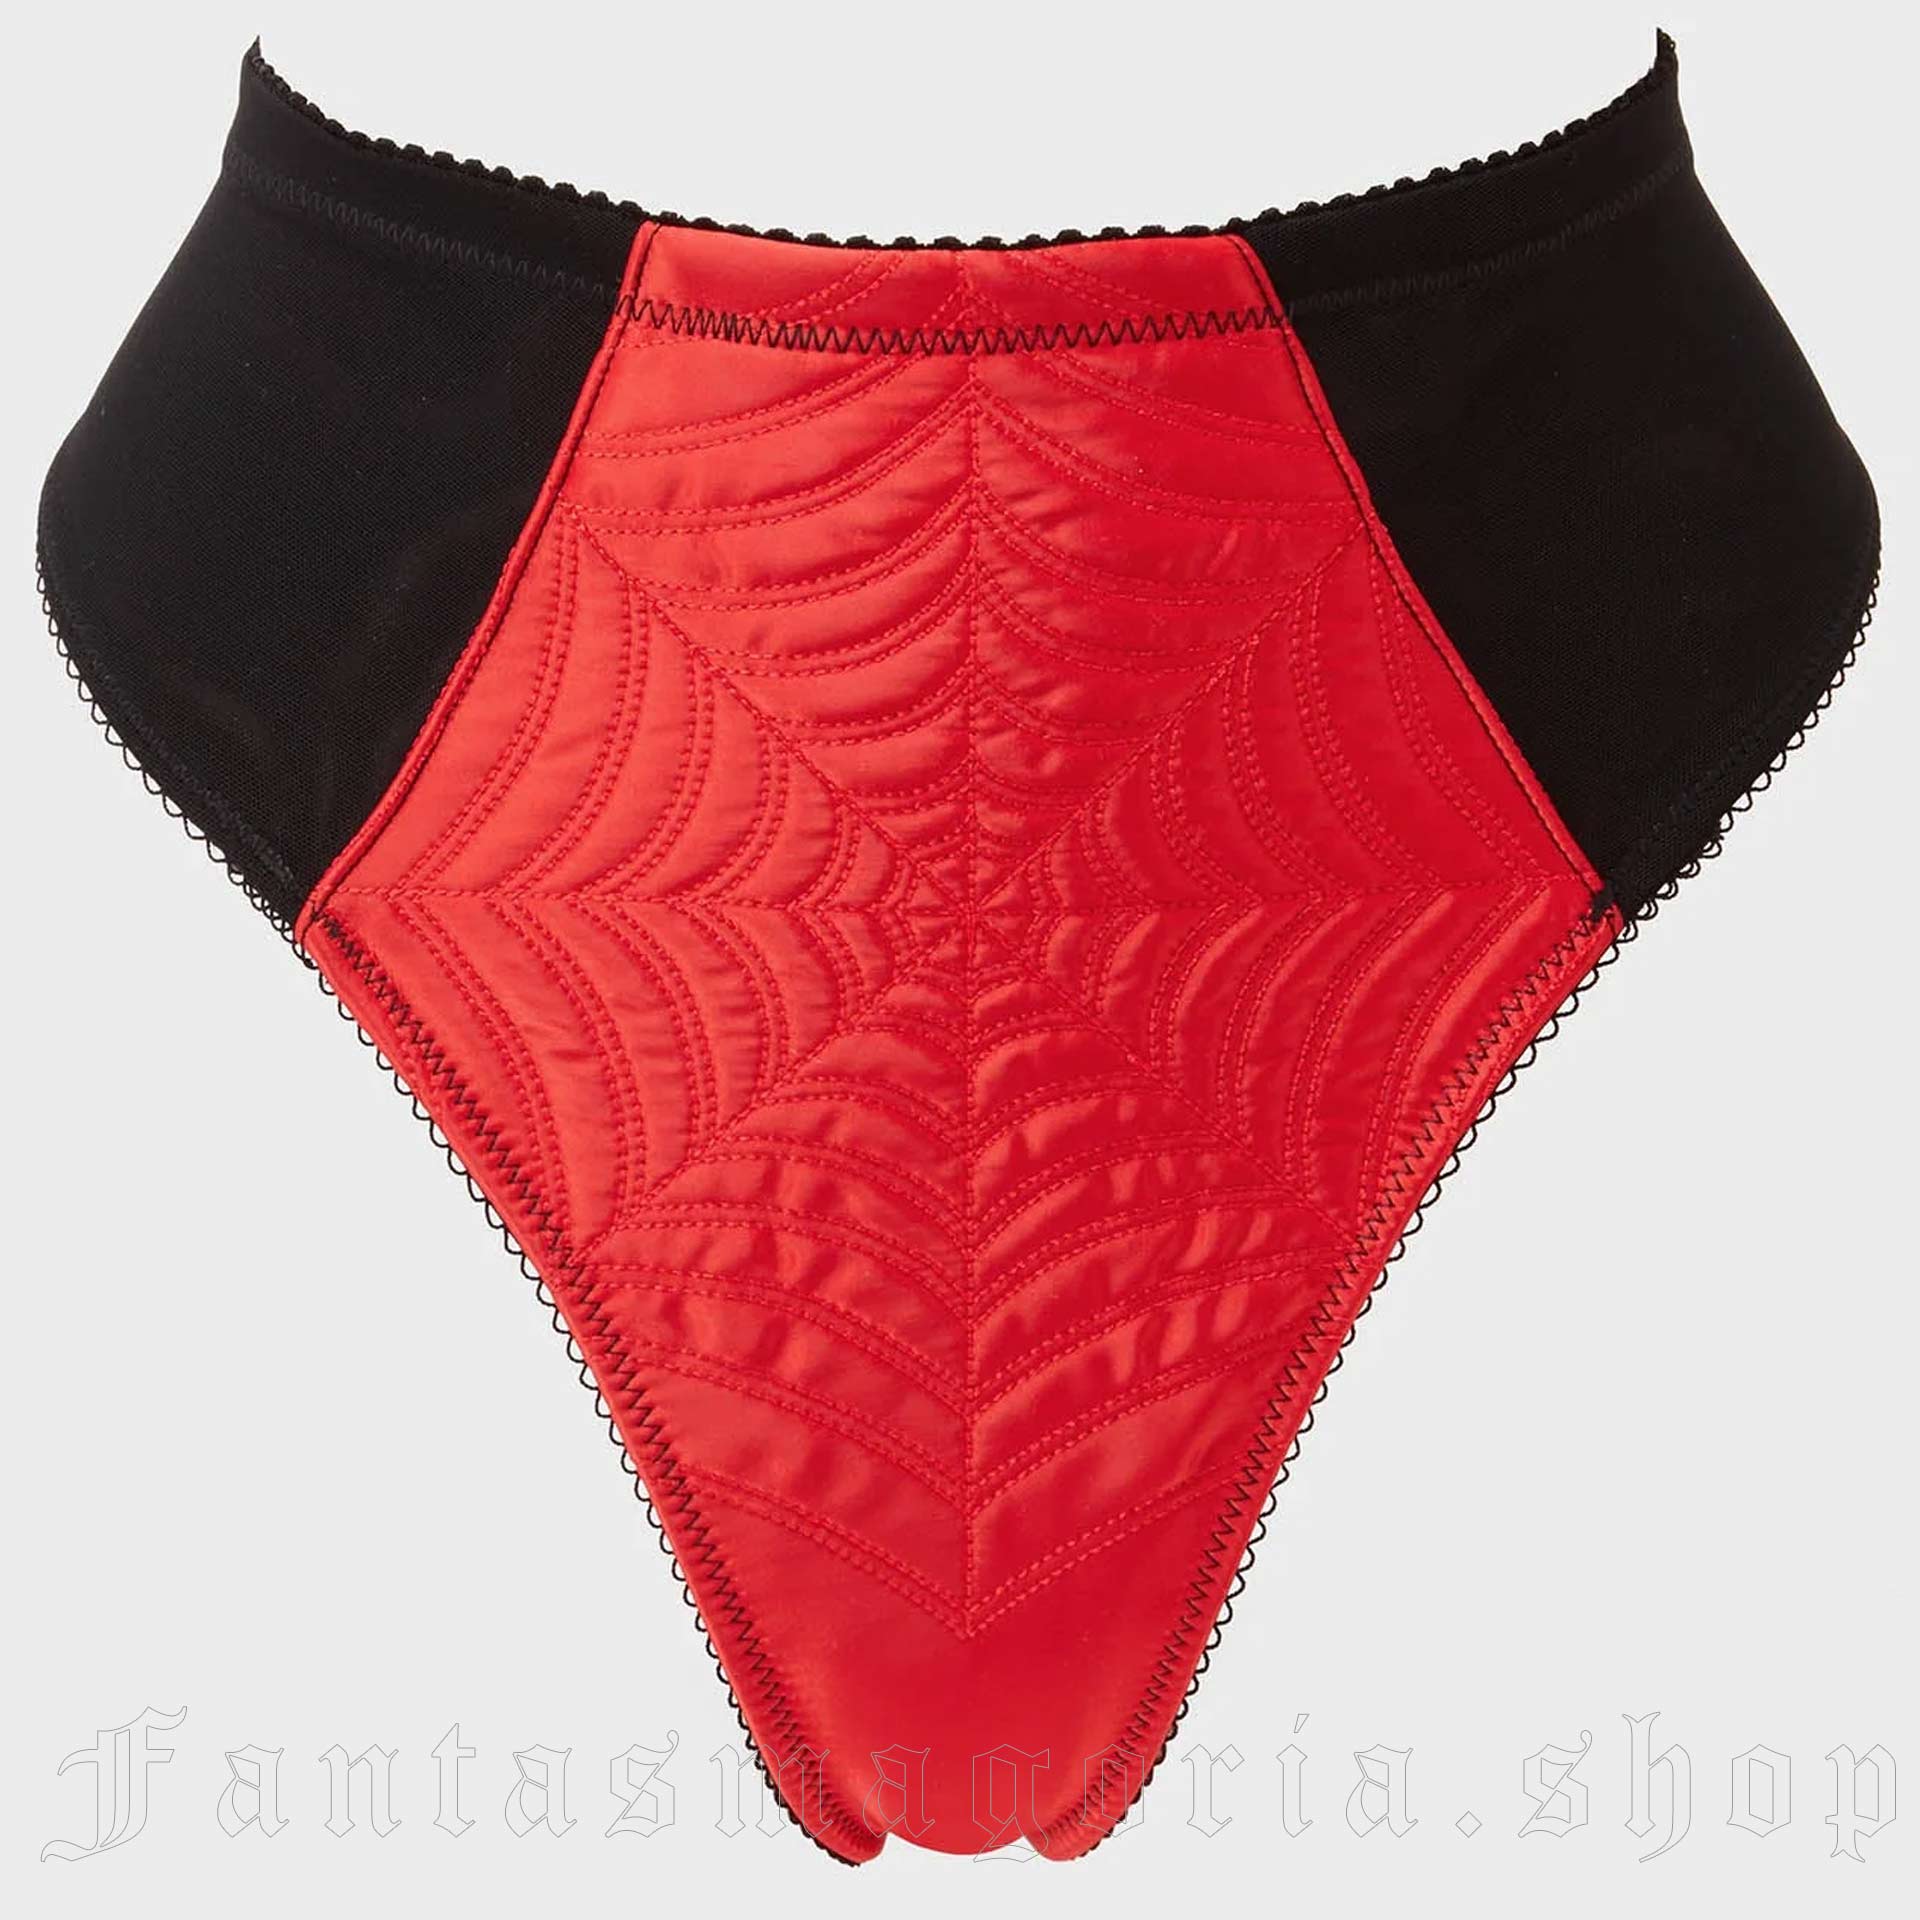 Women's Black & Red Rockabilly Pinup Underwear